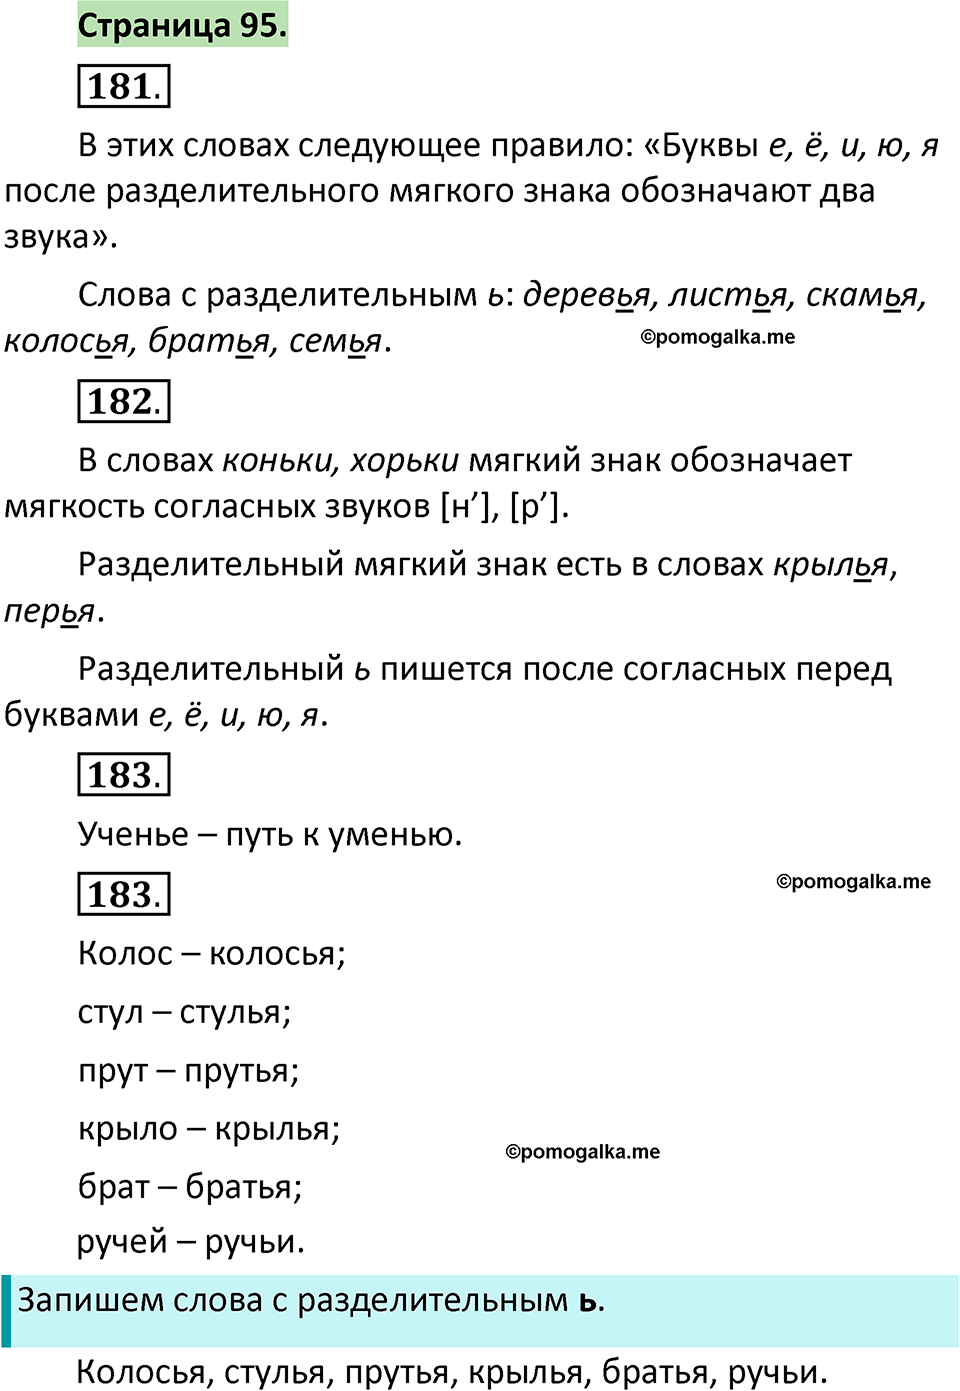 страница 95 русский язык 1 класс Климанова 2022